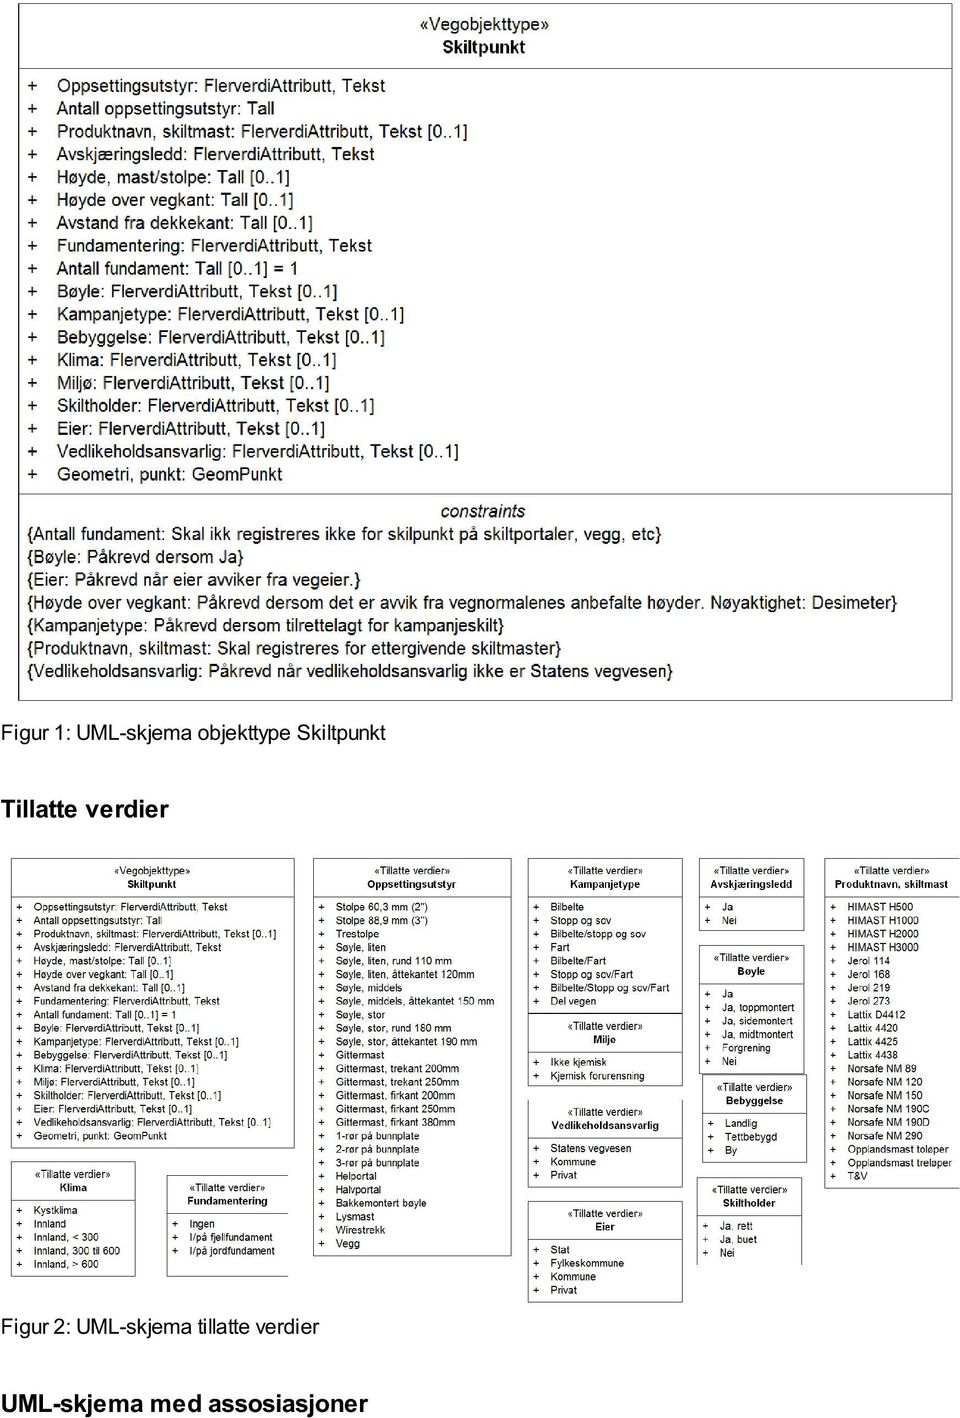 Figur 2: UML-skjema tillatte